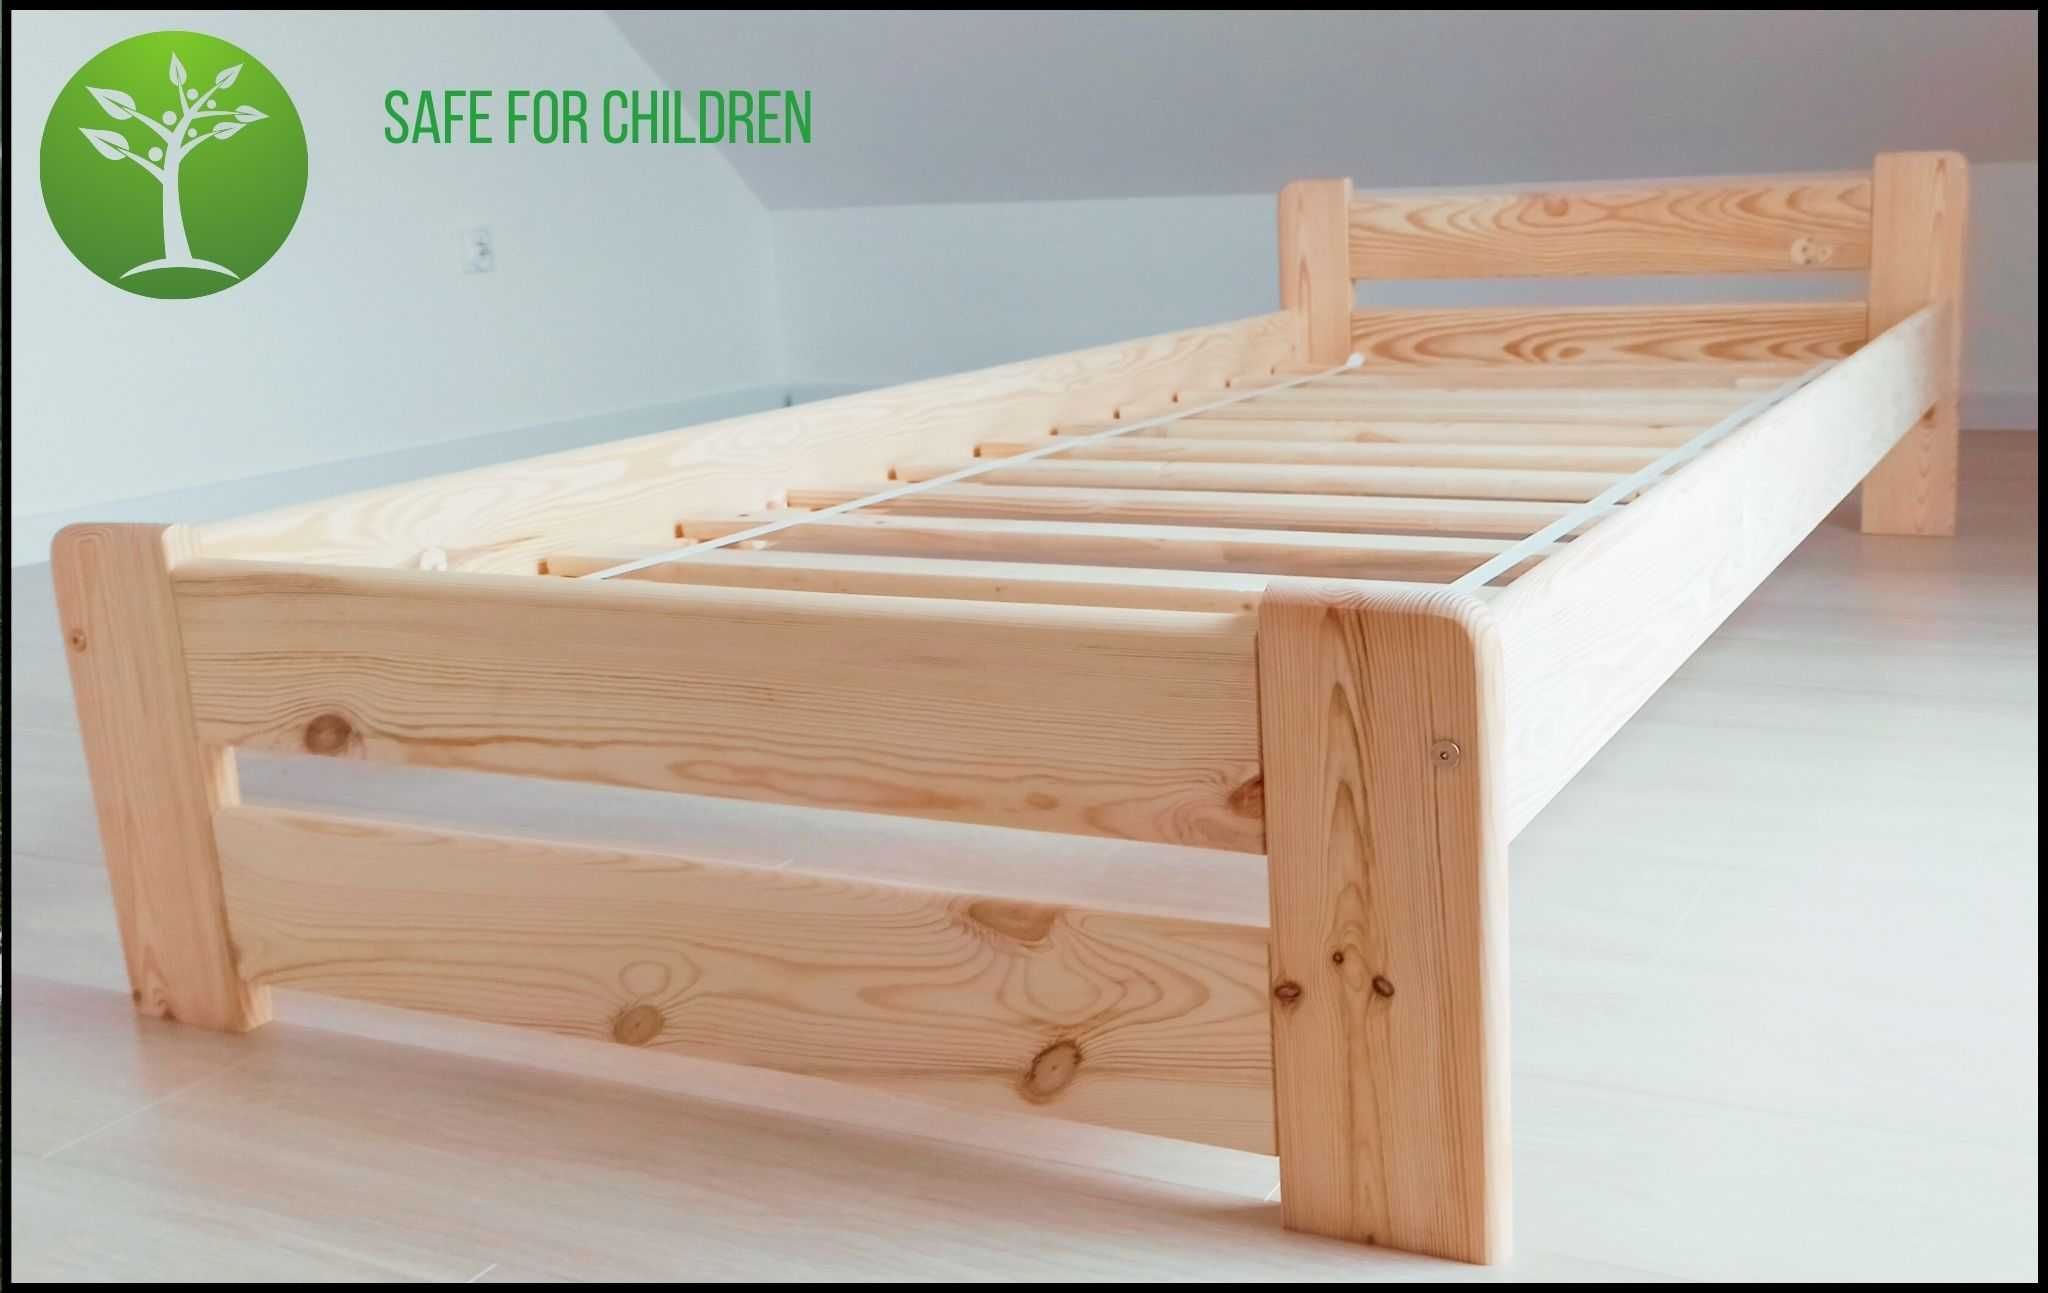 Łóżko sosnowe drewniane PRODUCENT 90x200, KURIER DPD 0zł pobranie